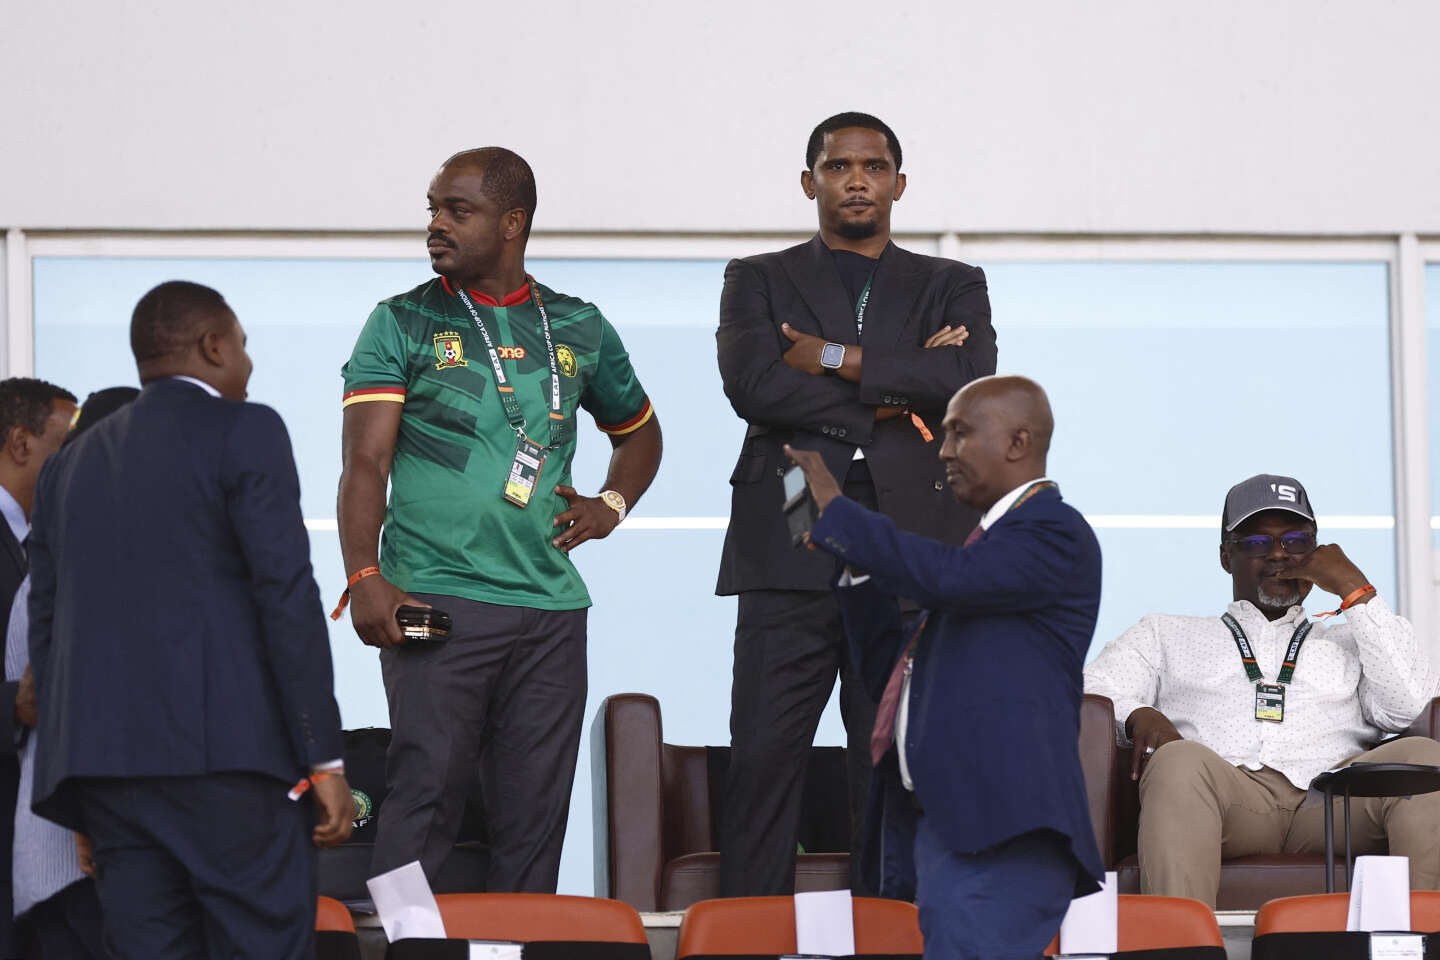 Au Cameroun, la Fecafoot de Samuel Eto’o conteste la nomination du nouveau sélectionneur des Lions indomptables